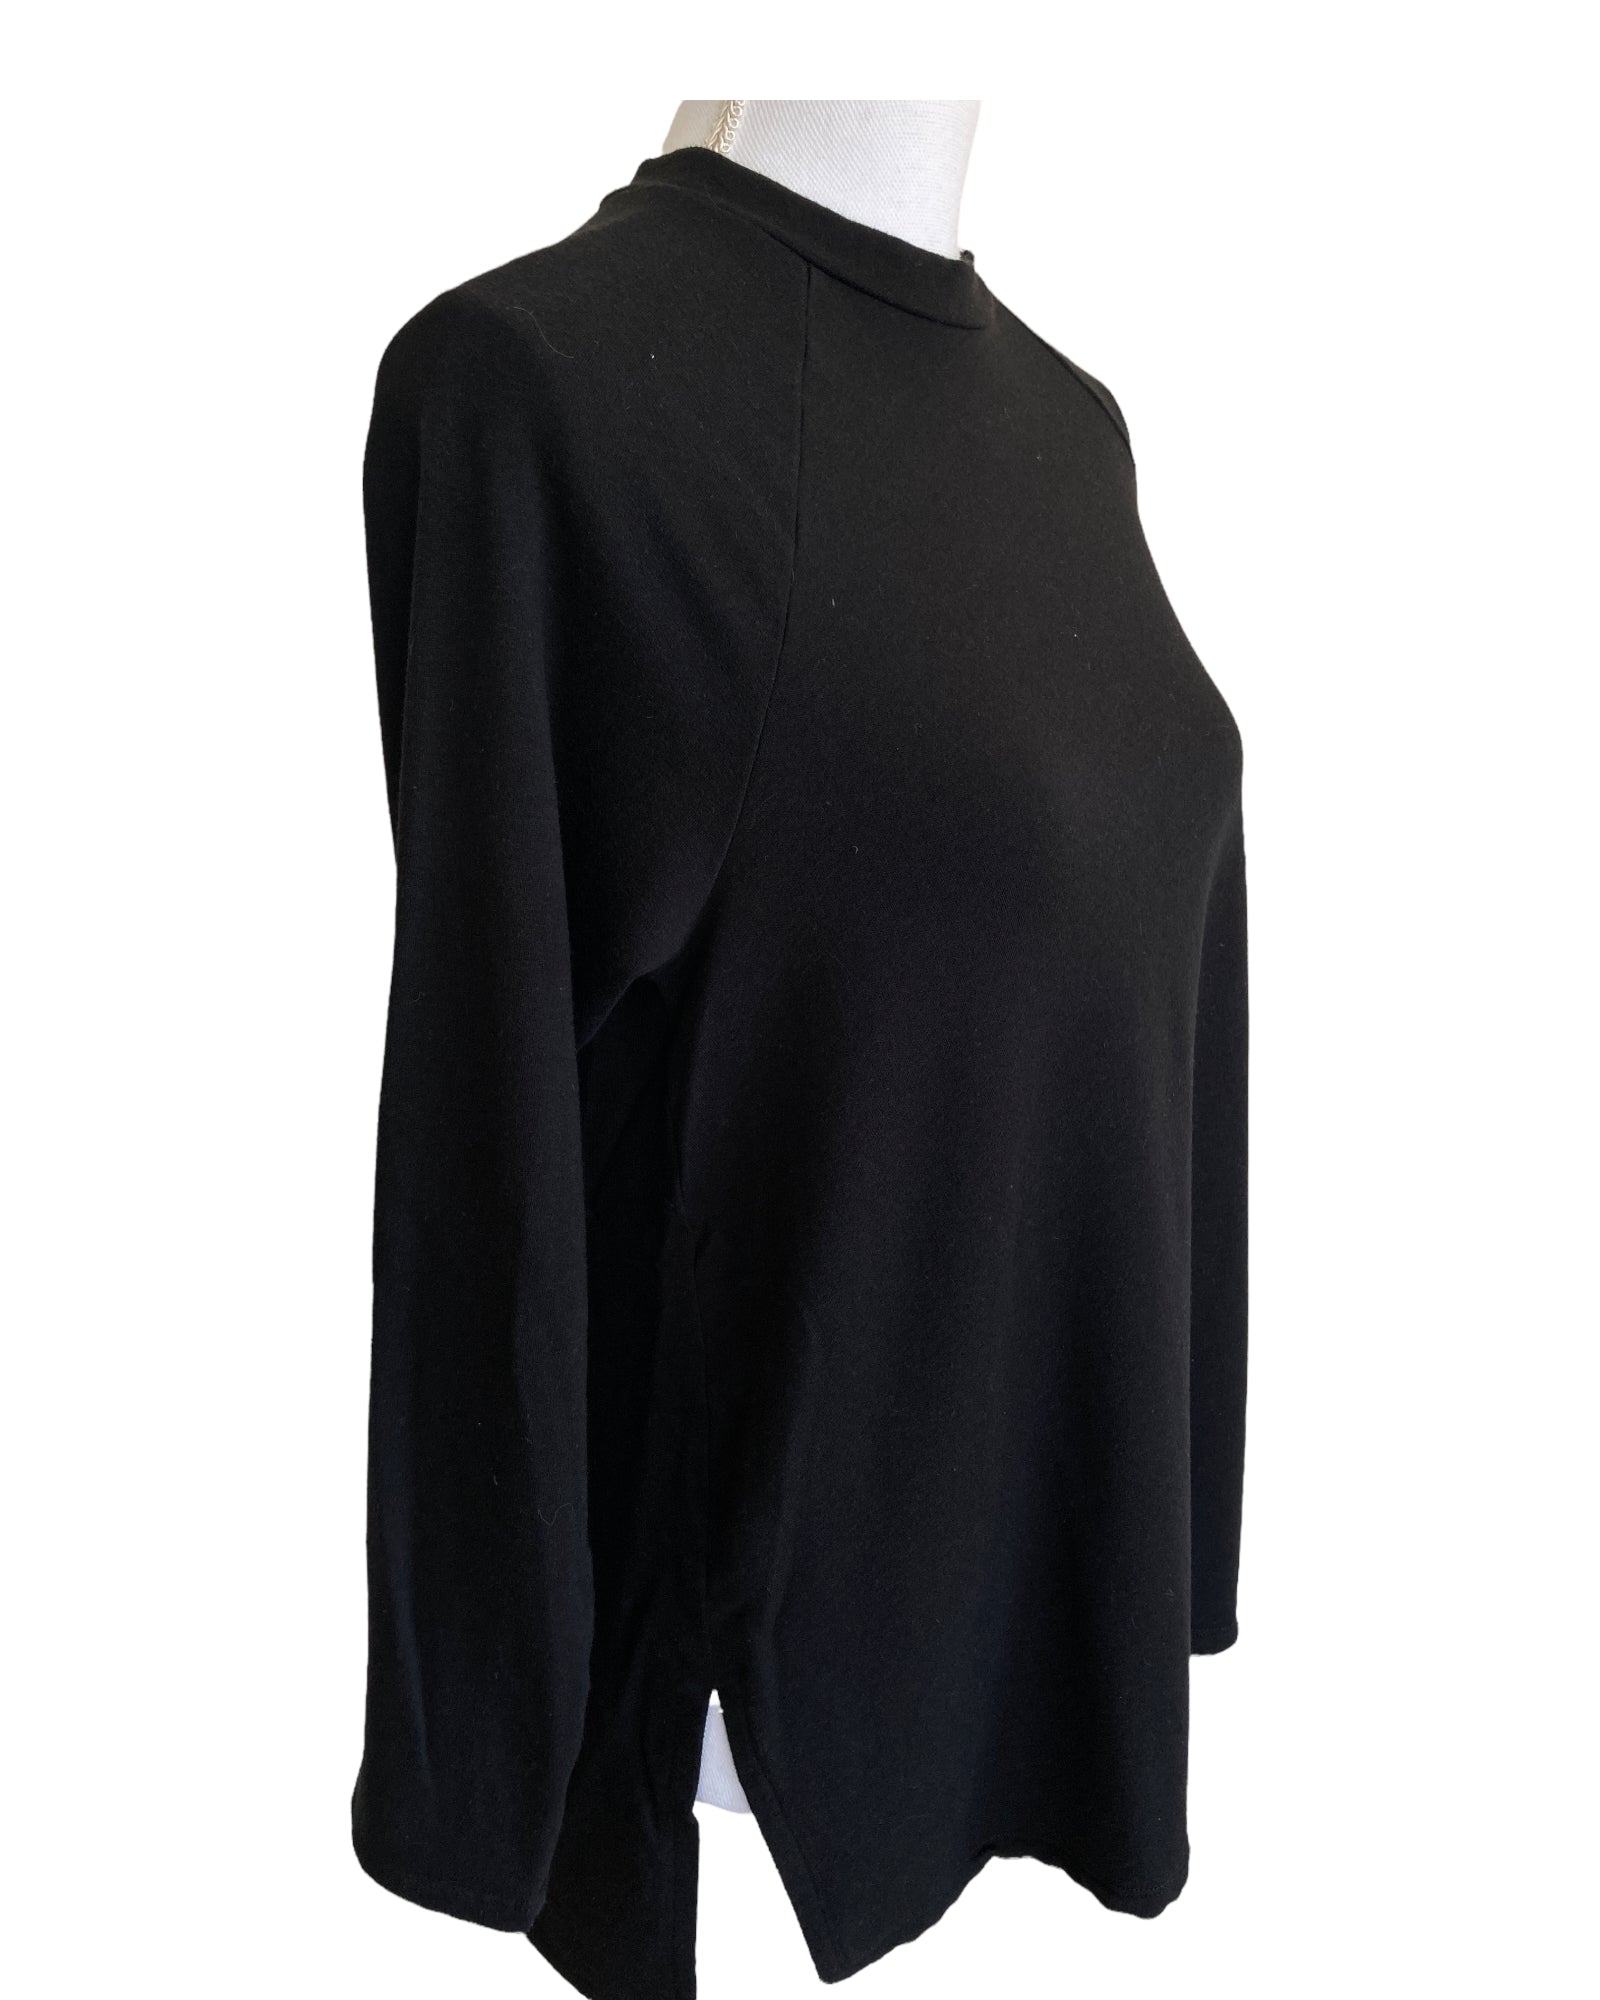 Eileen Fisher Black Sweatshirt, S